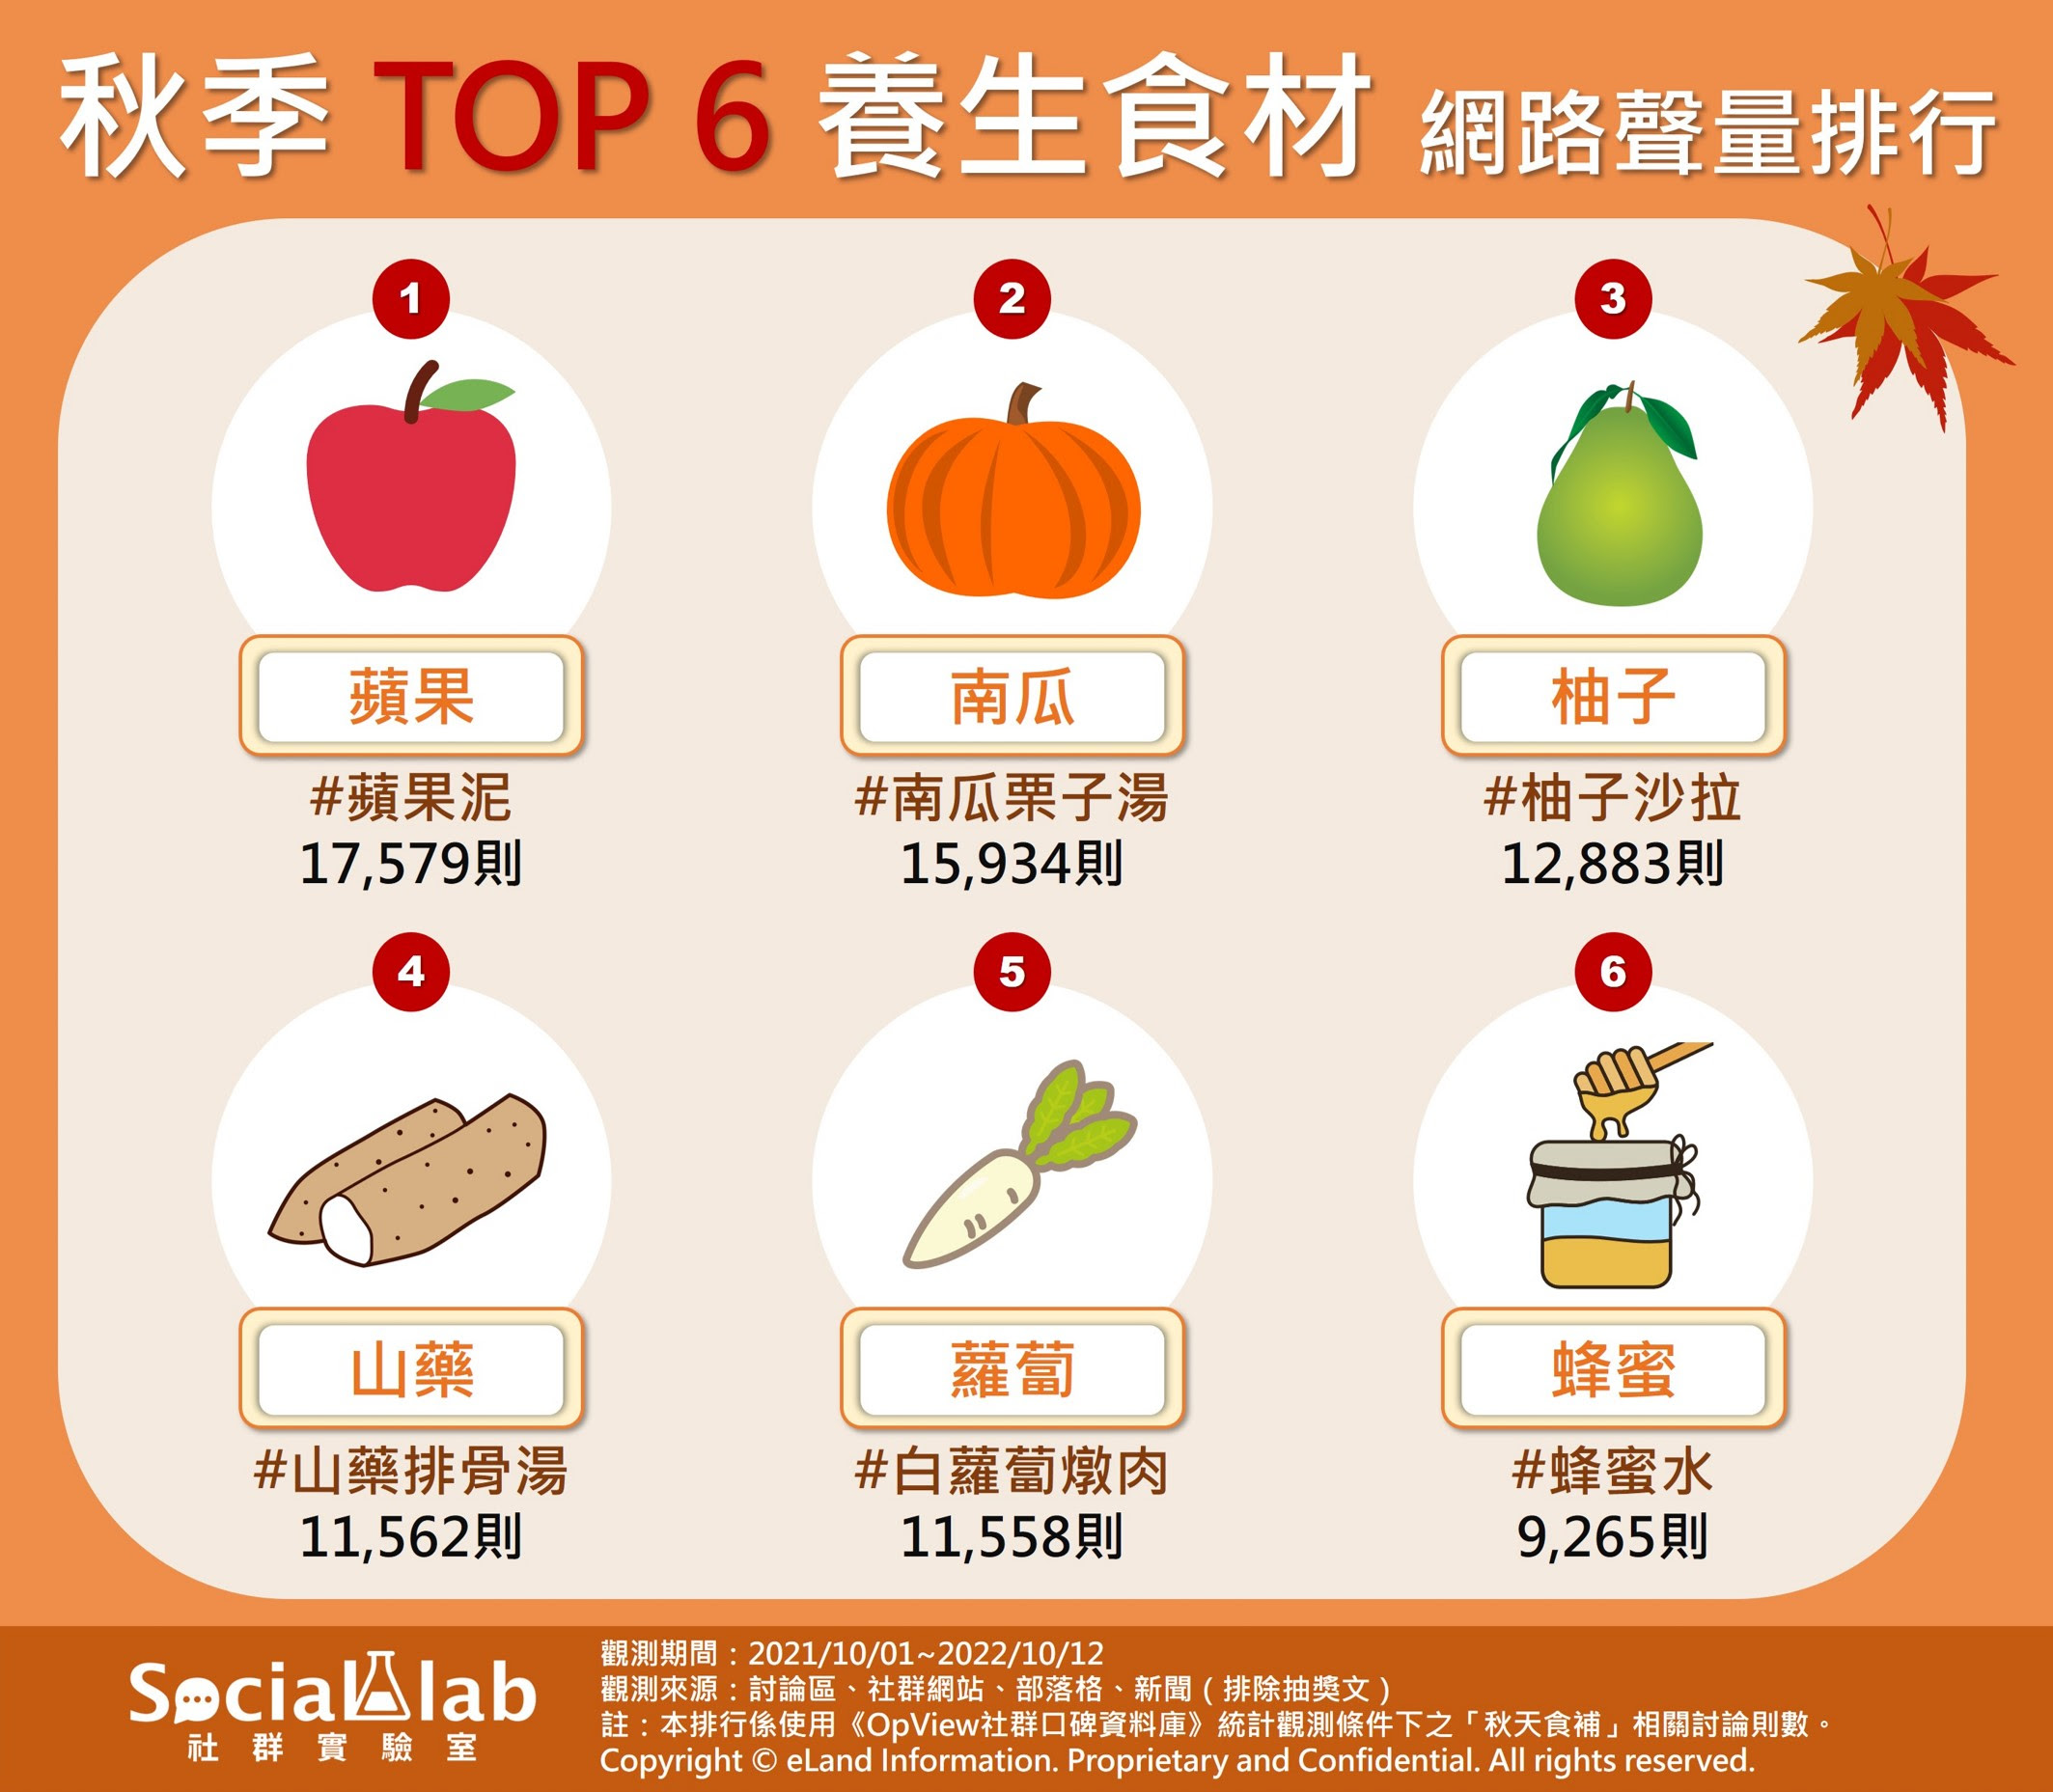 秋季TOP6養生食材 網路聲量排行